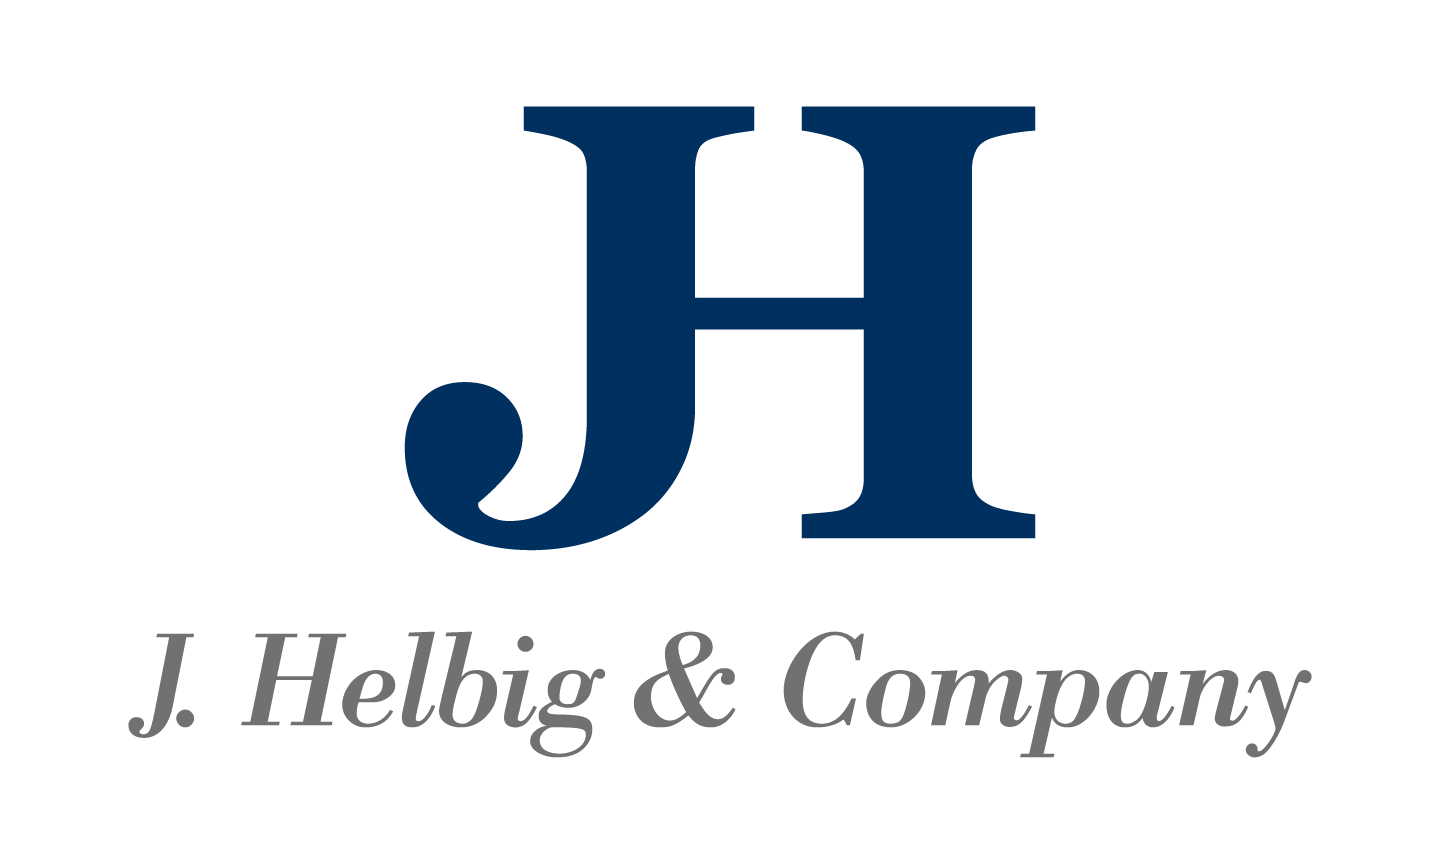 J. Helbig & Company logo